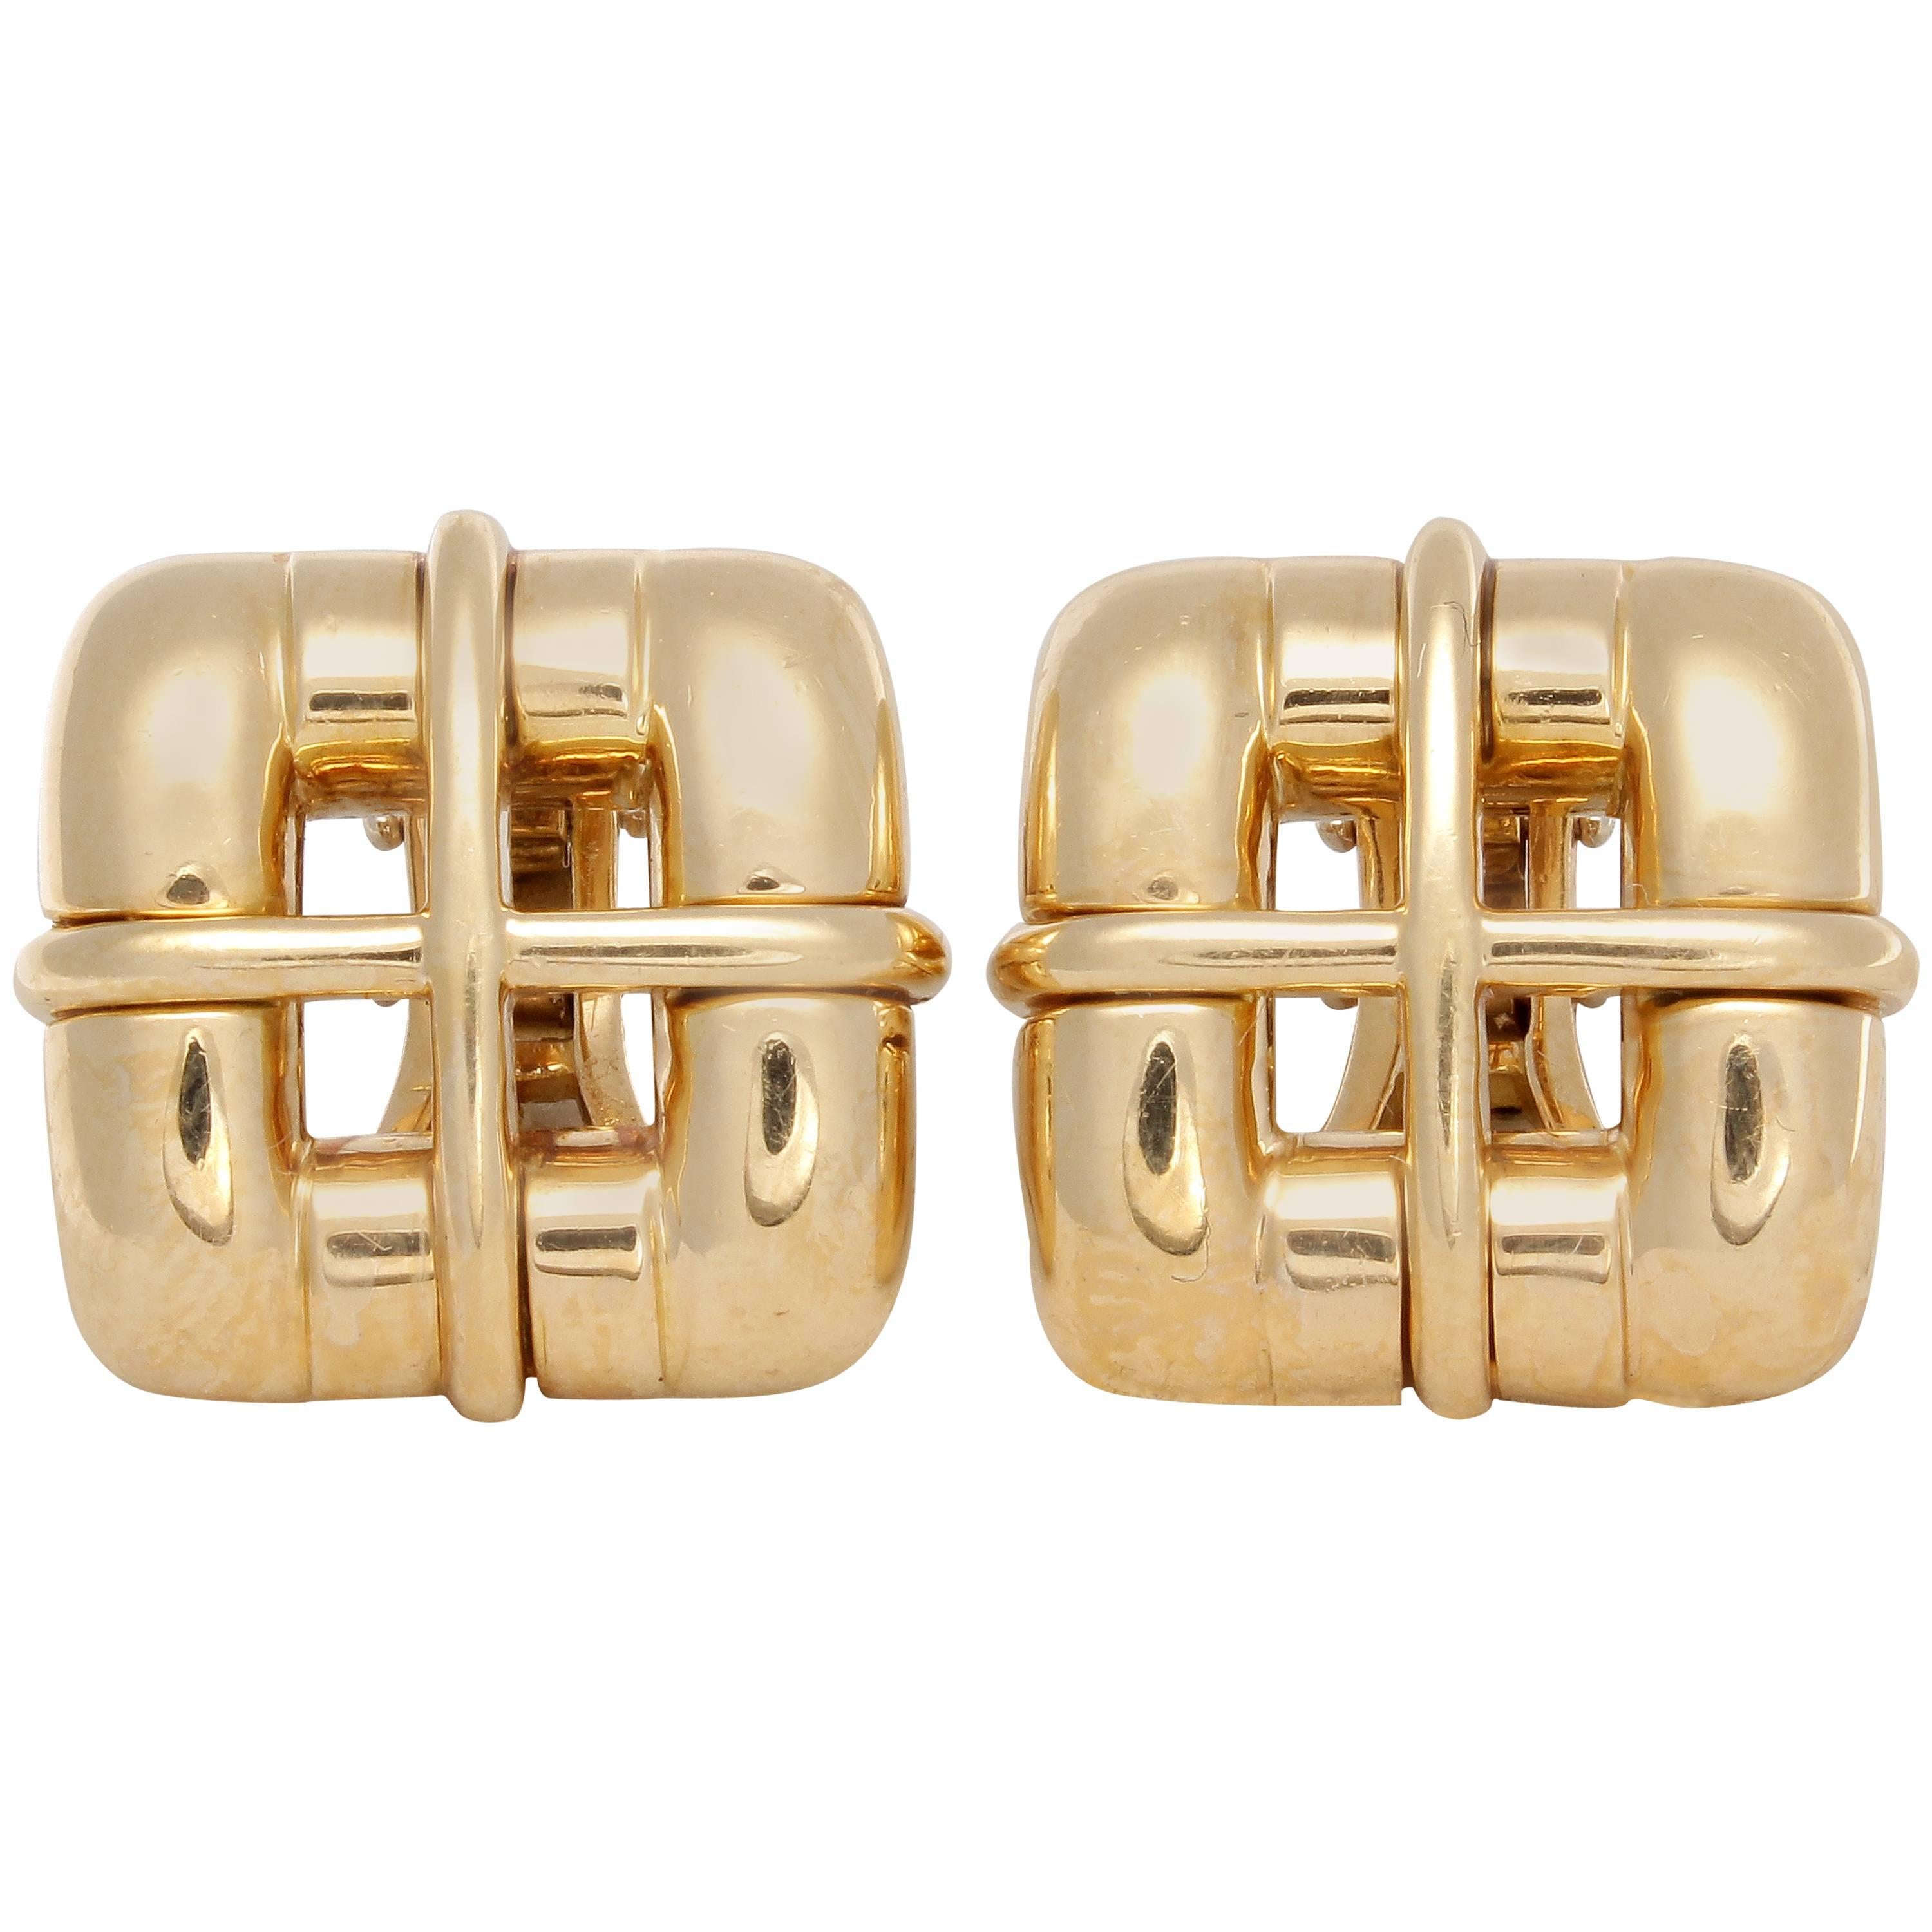 Tiffany & Co. Italy Gold Earrings